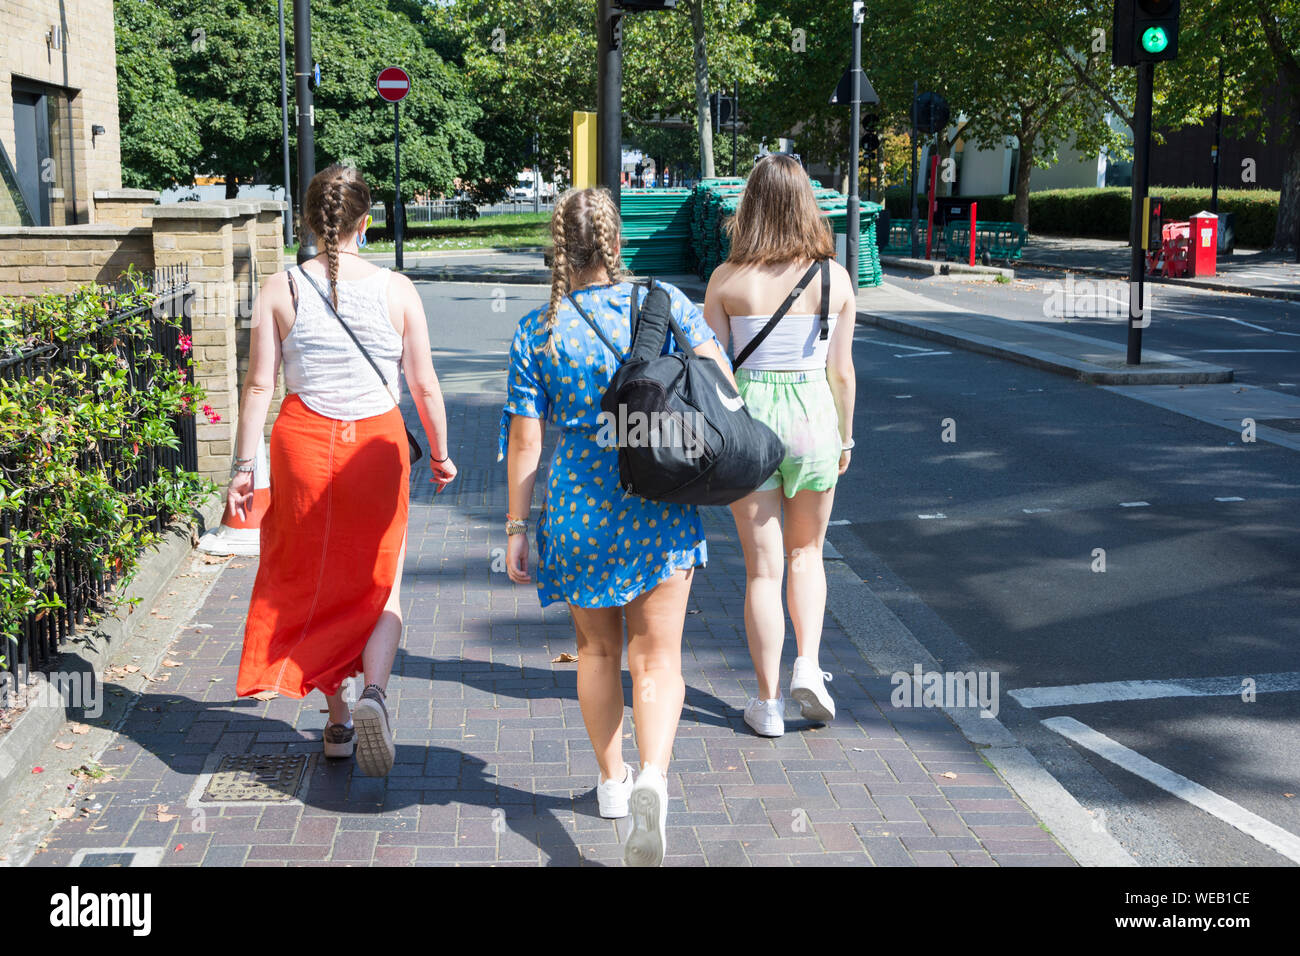 Drei junge Frauen, die in sommerliche Kleidung wandern mit dem Rücken zur Kamera entlang einer Straße im Südwesten von London, Großbritannien Stockfoto